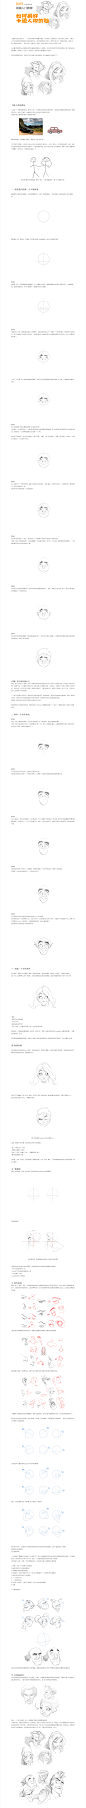 【动画入门教程】如何画好卡通人物的脸 